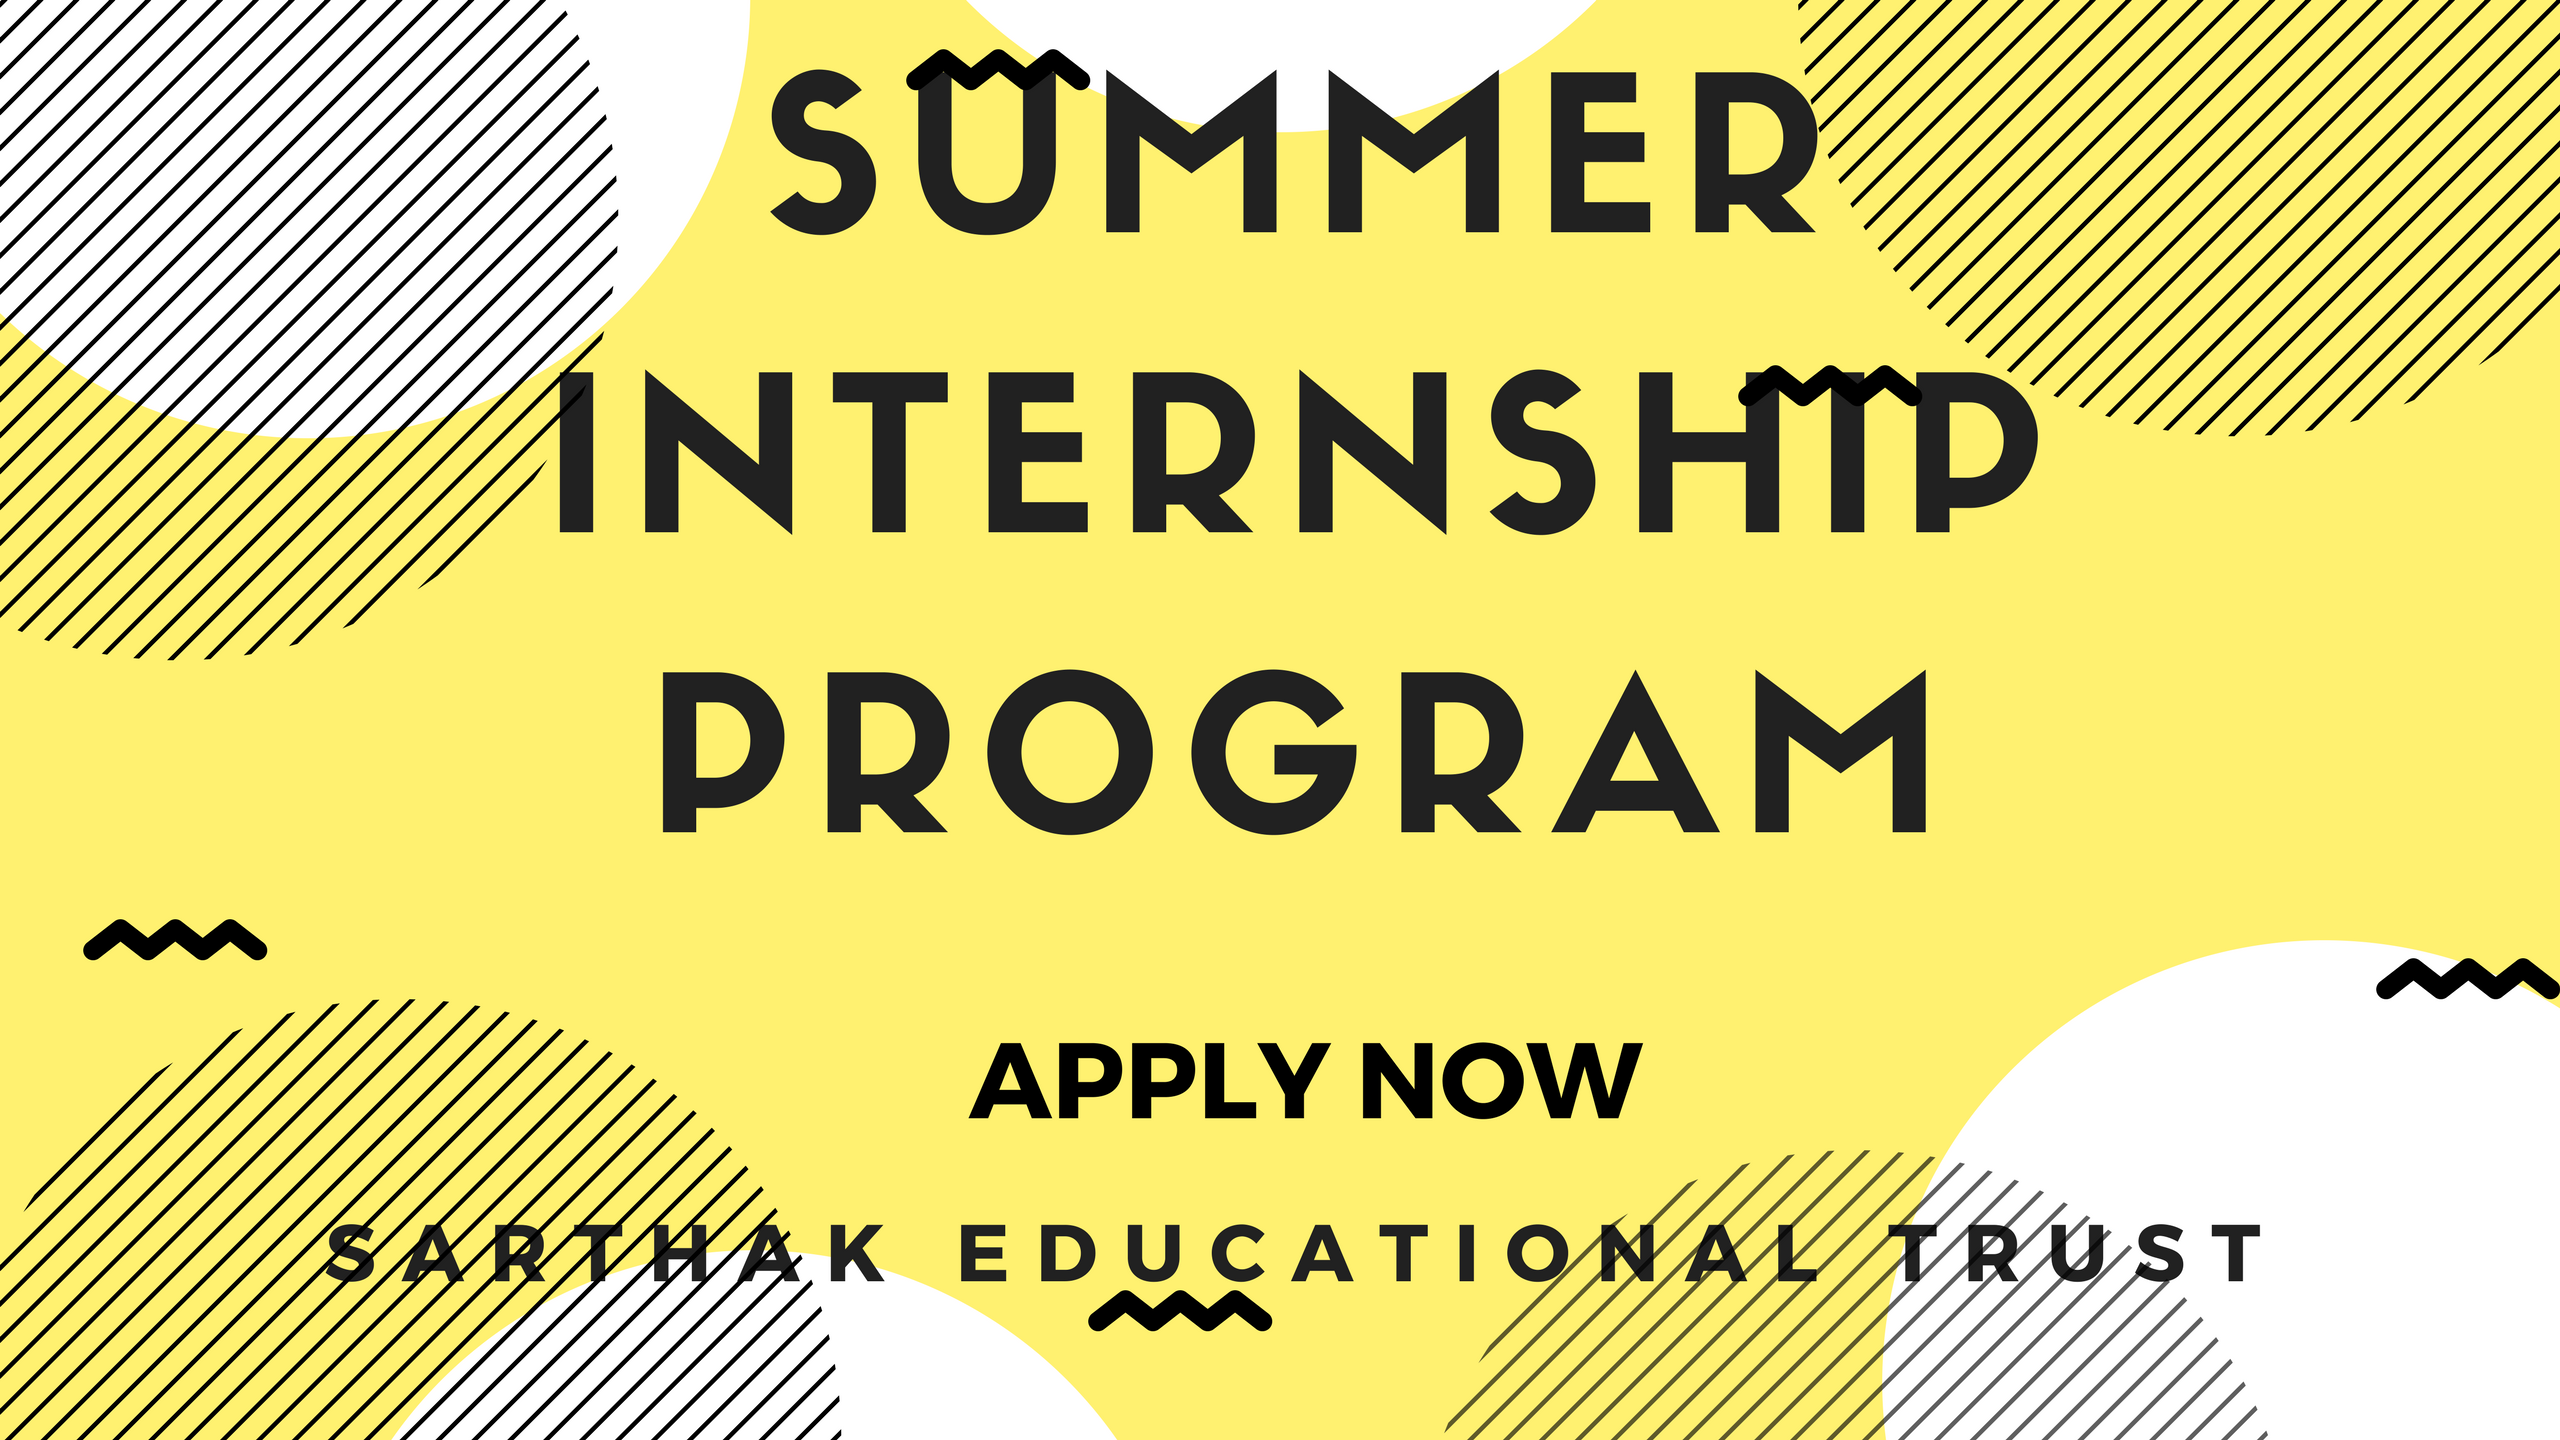 Summer Internship Program